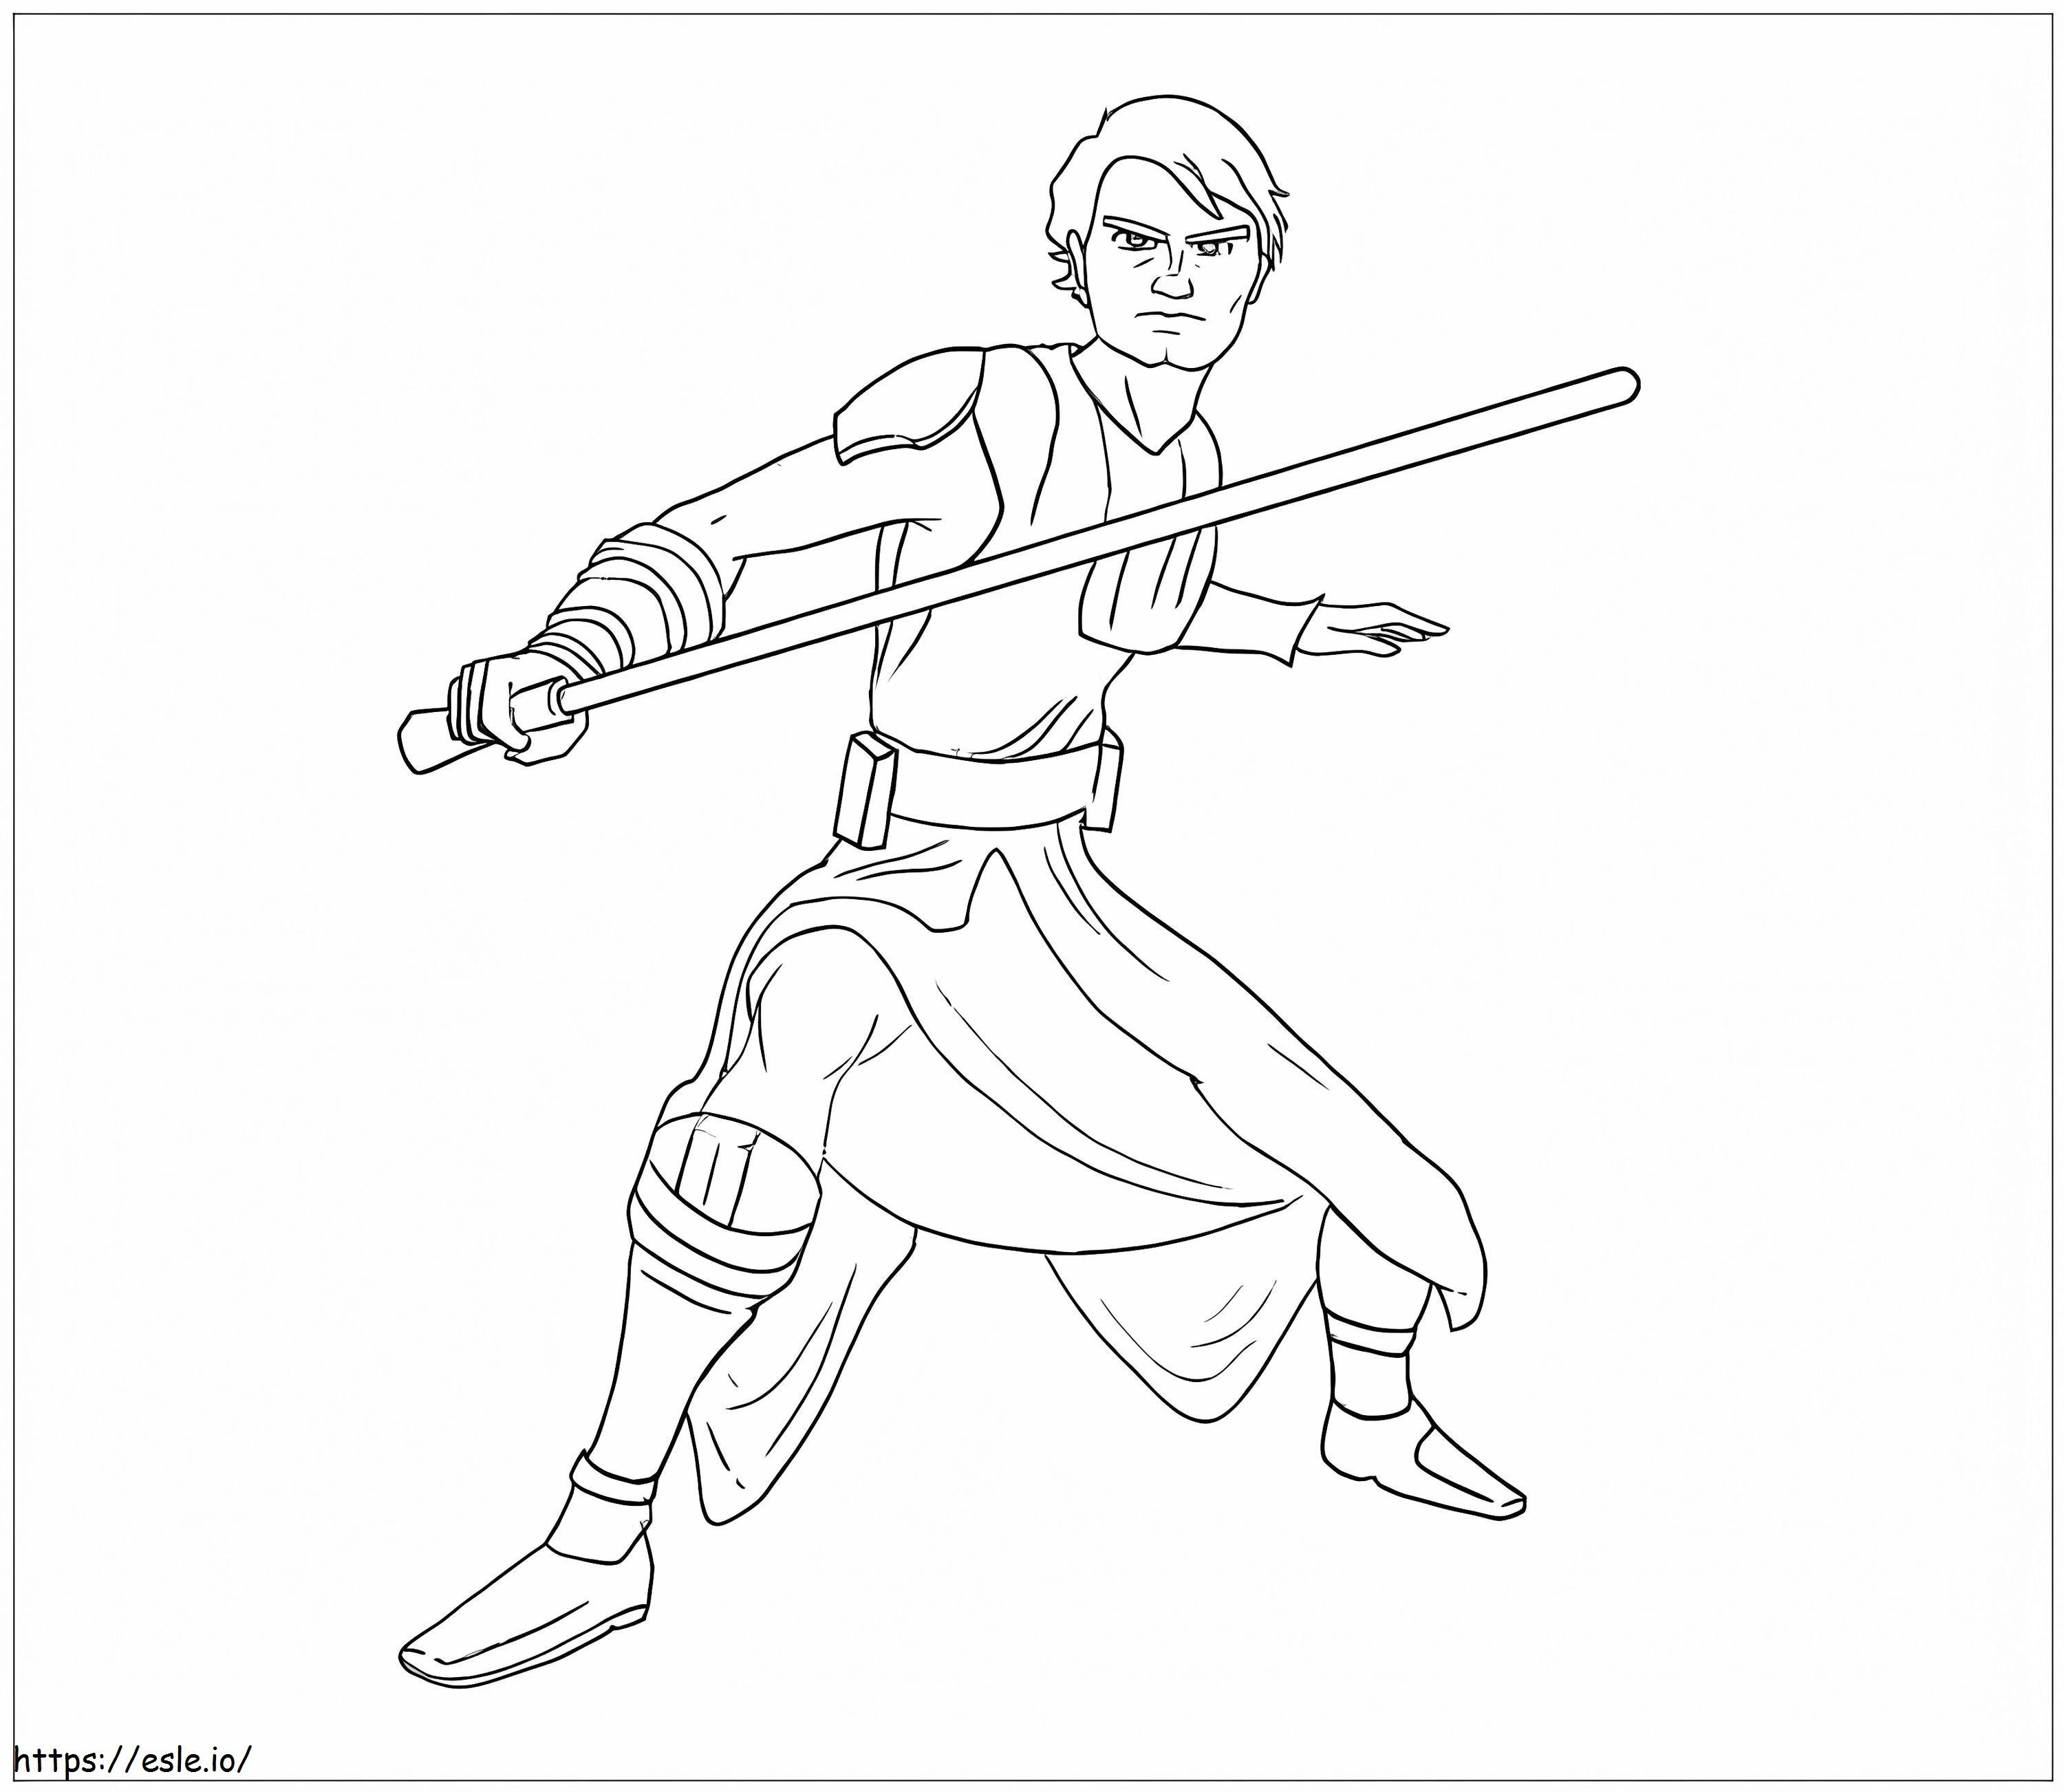 Luke Skywalker Cartoon coloring page